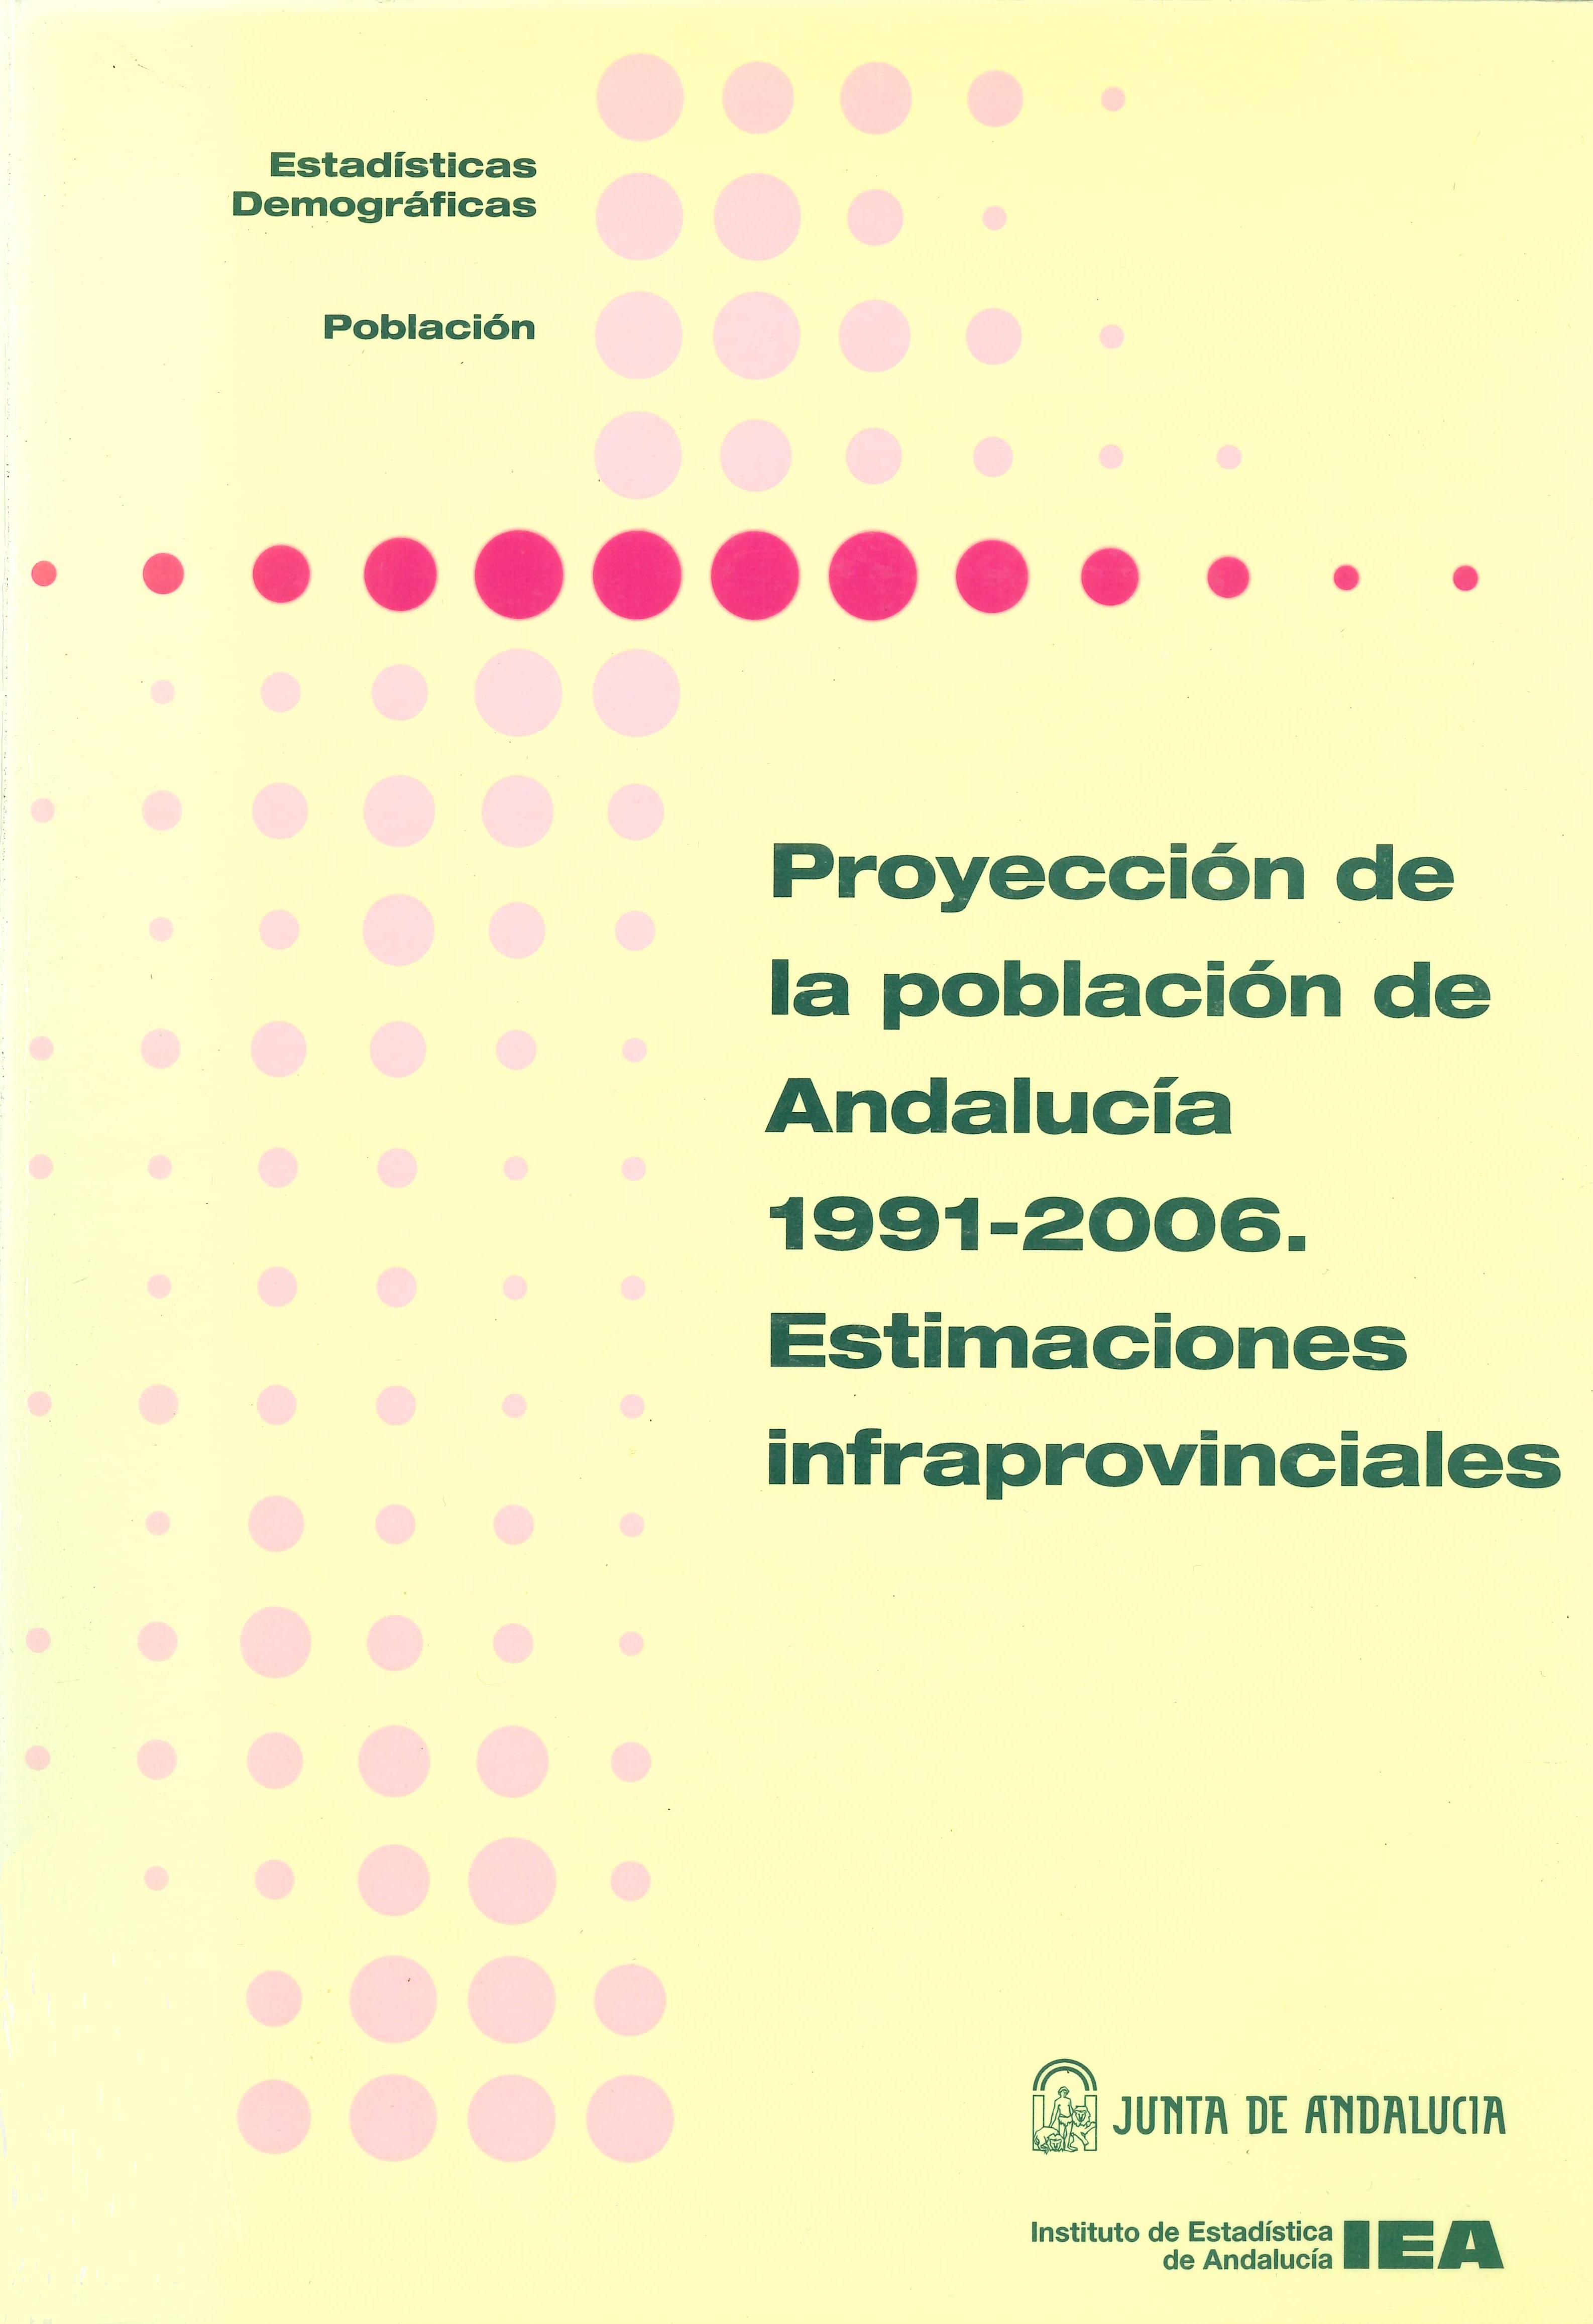 Imagen representativa de la publicación Proyección de la población de Andalucía 1991-2006: estimaciones infraprovinciales